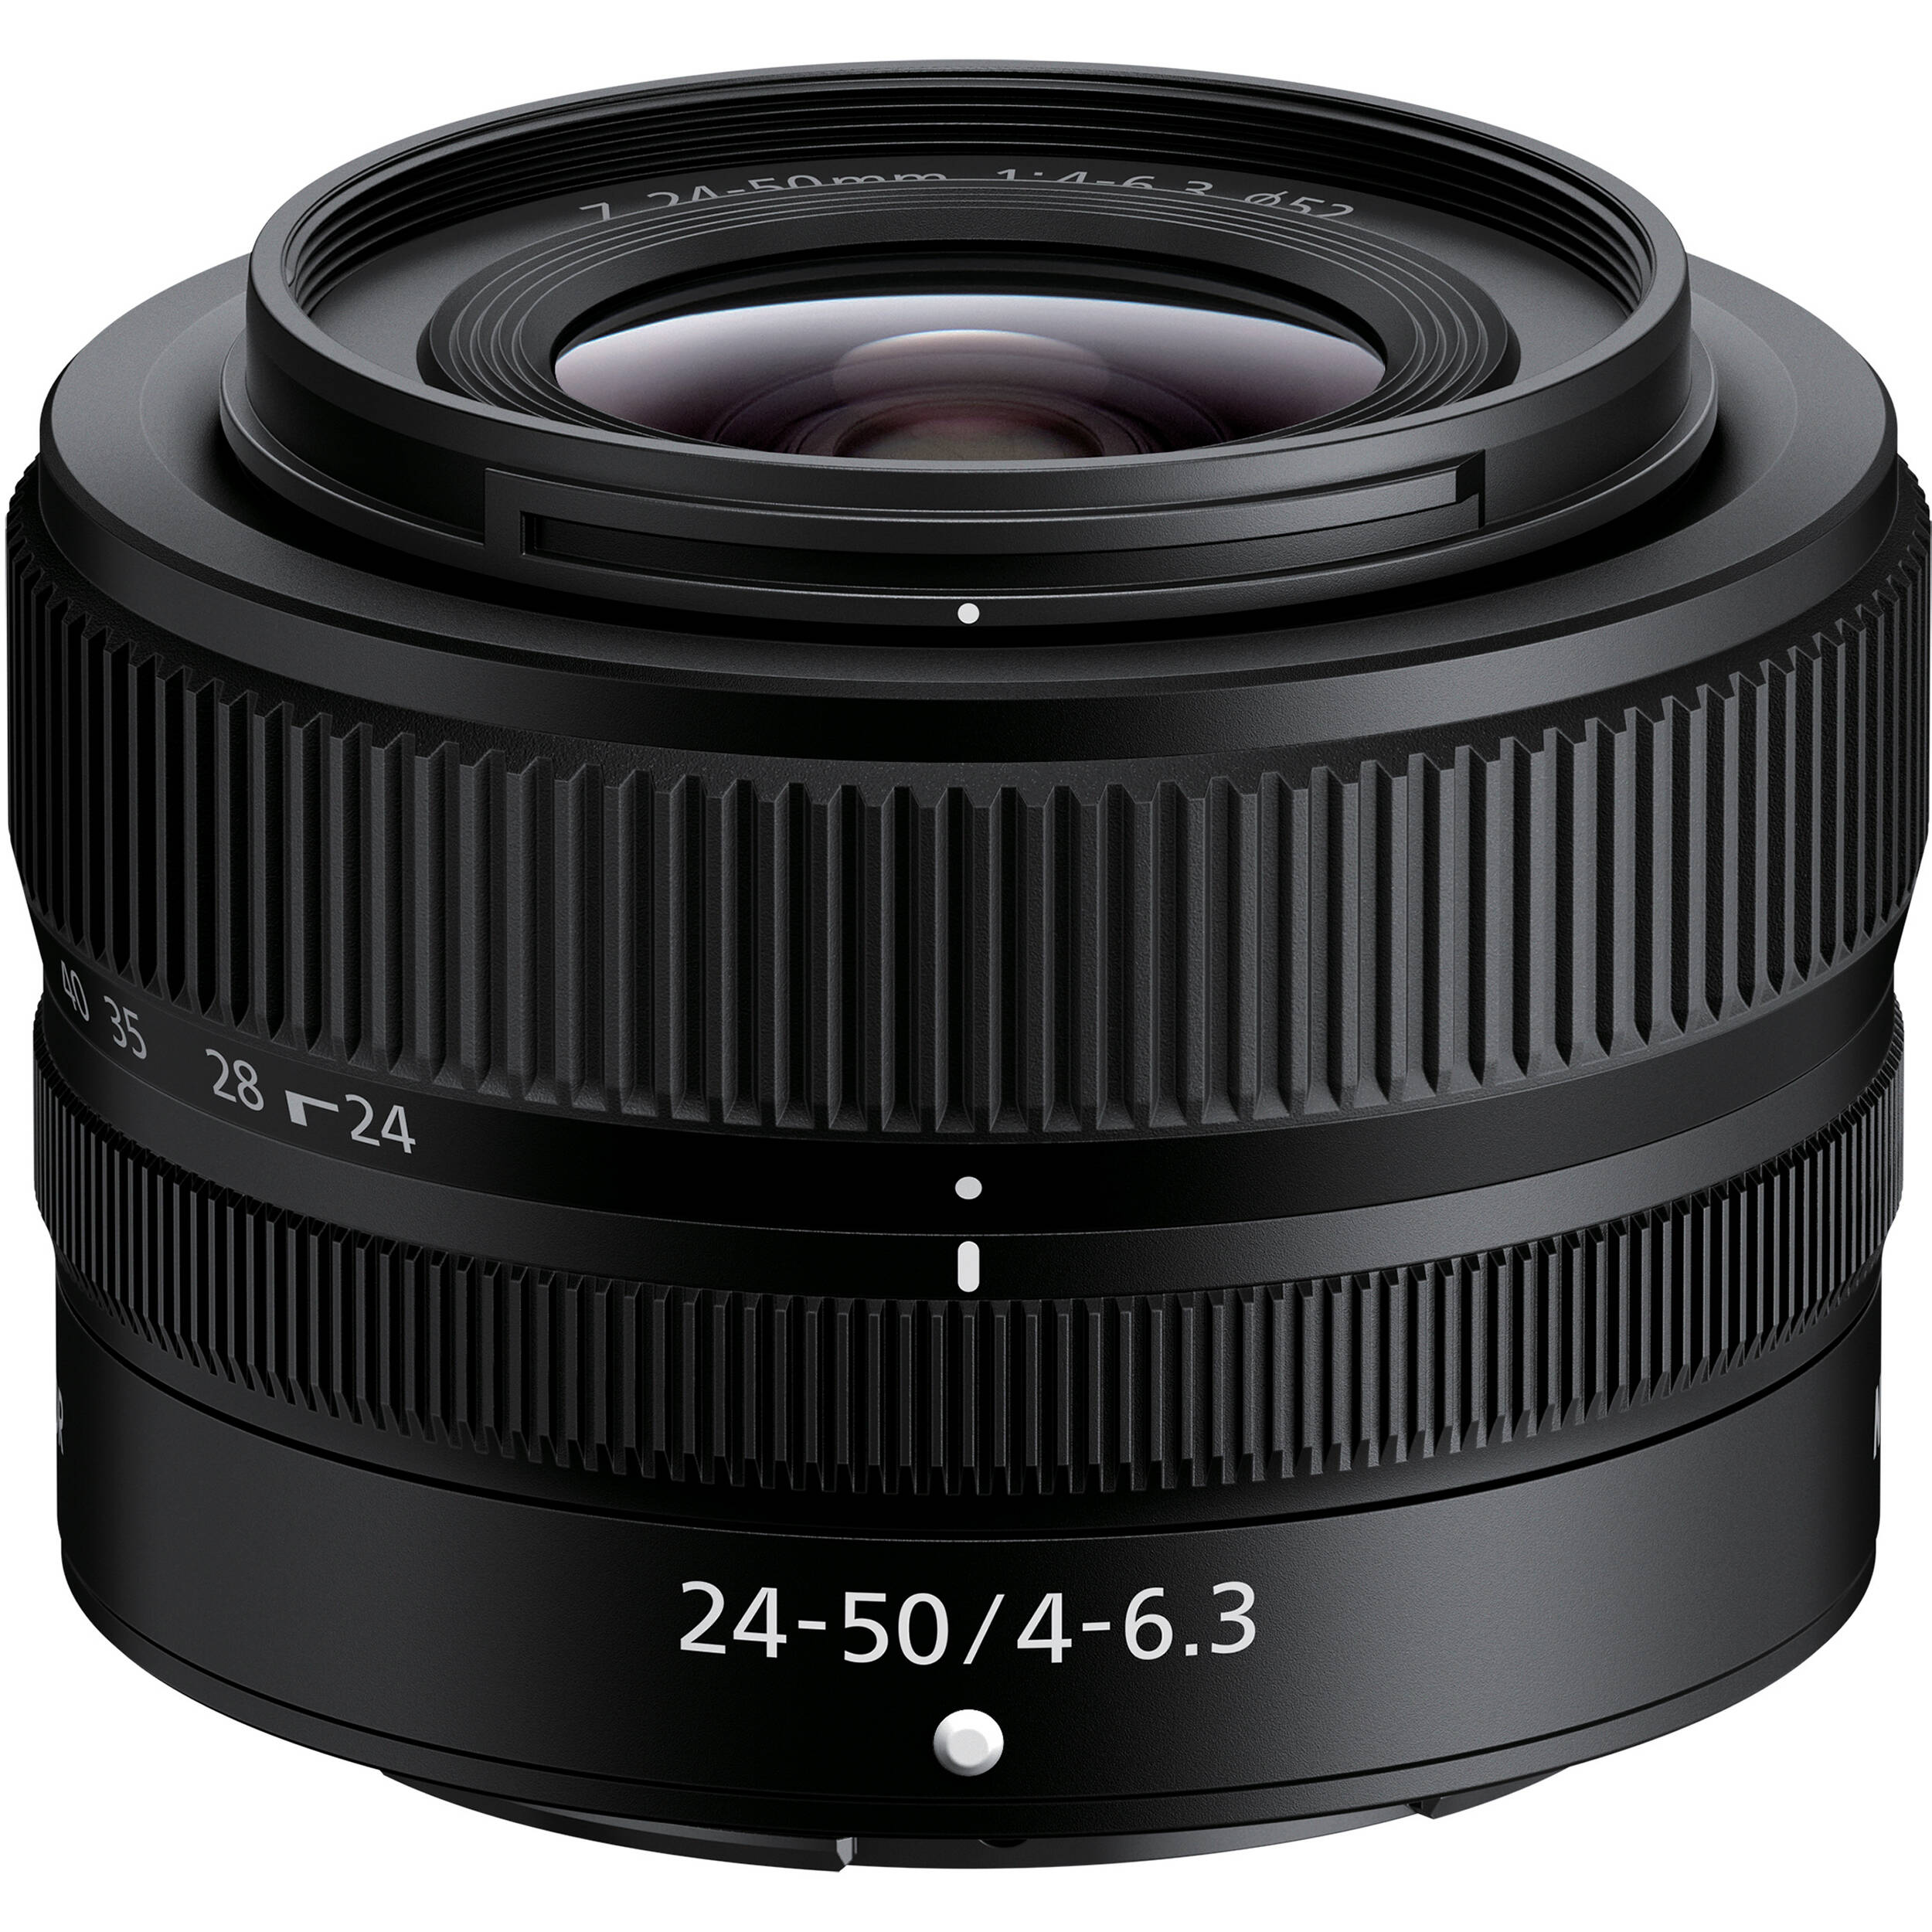 Ống Kính Nikon Z 24-50mm f/4-6.3 Giá Tốt, BH 1 Năm - VJShop